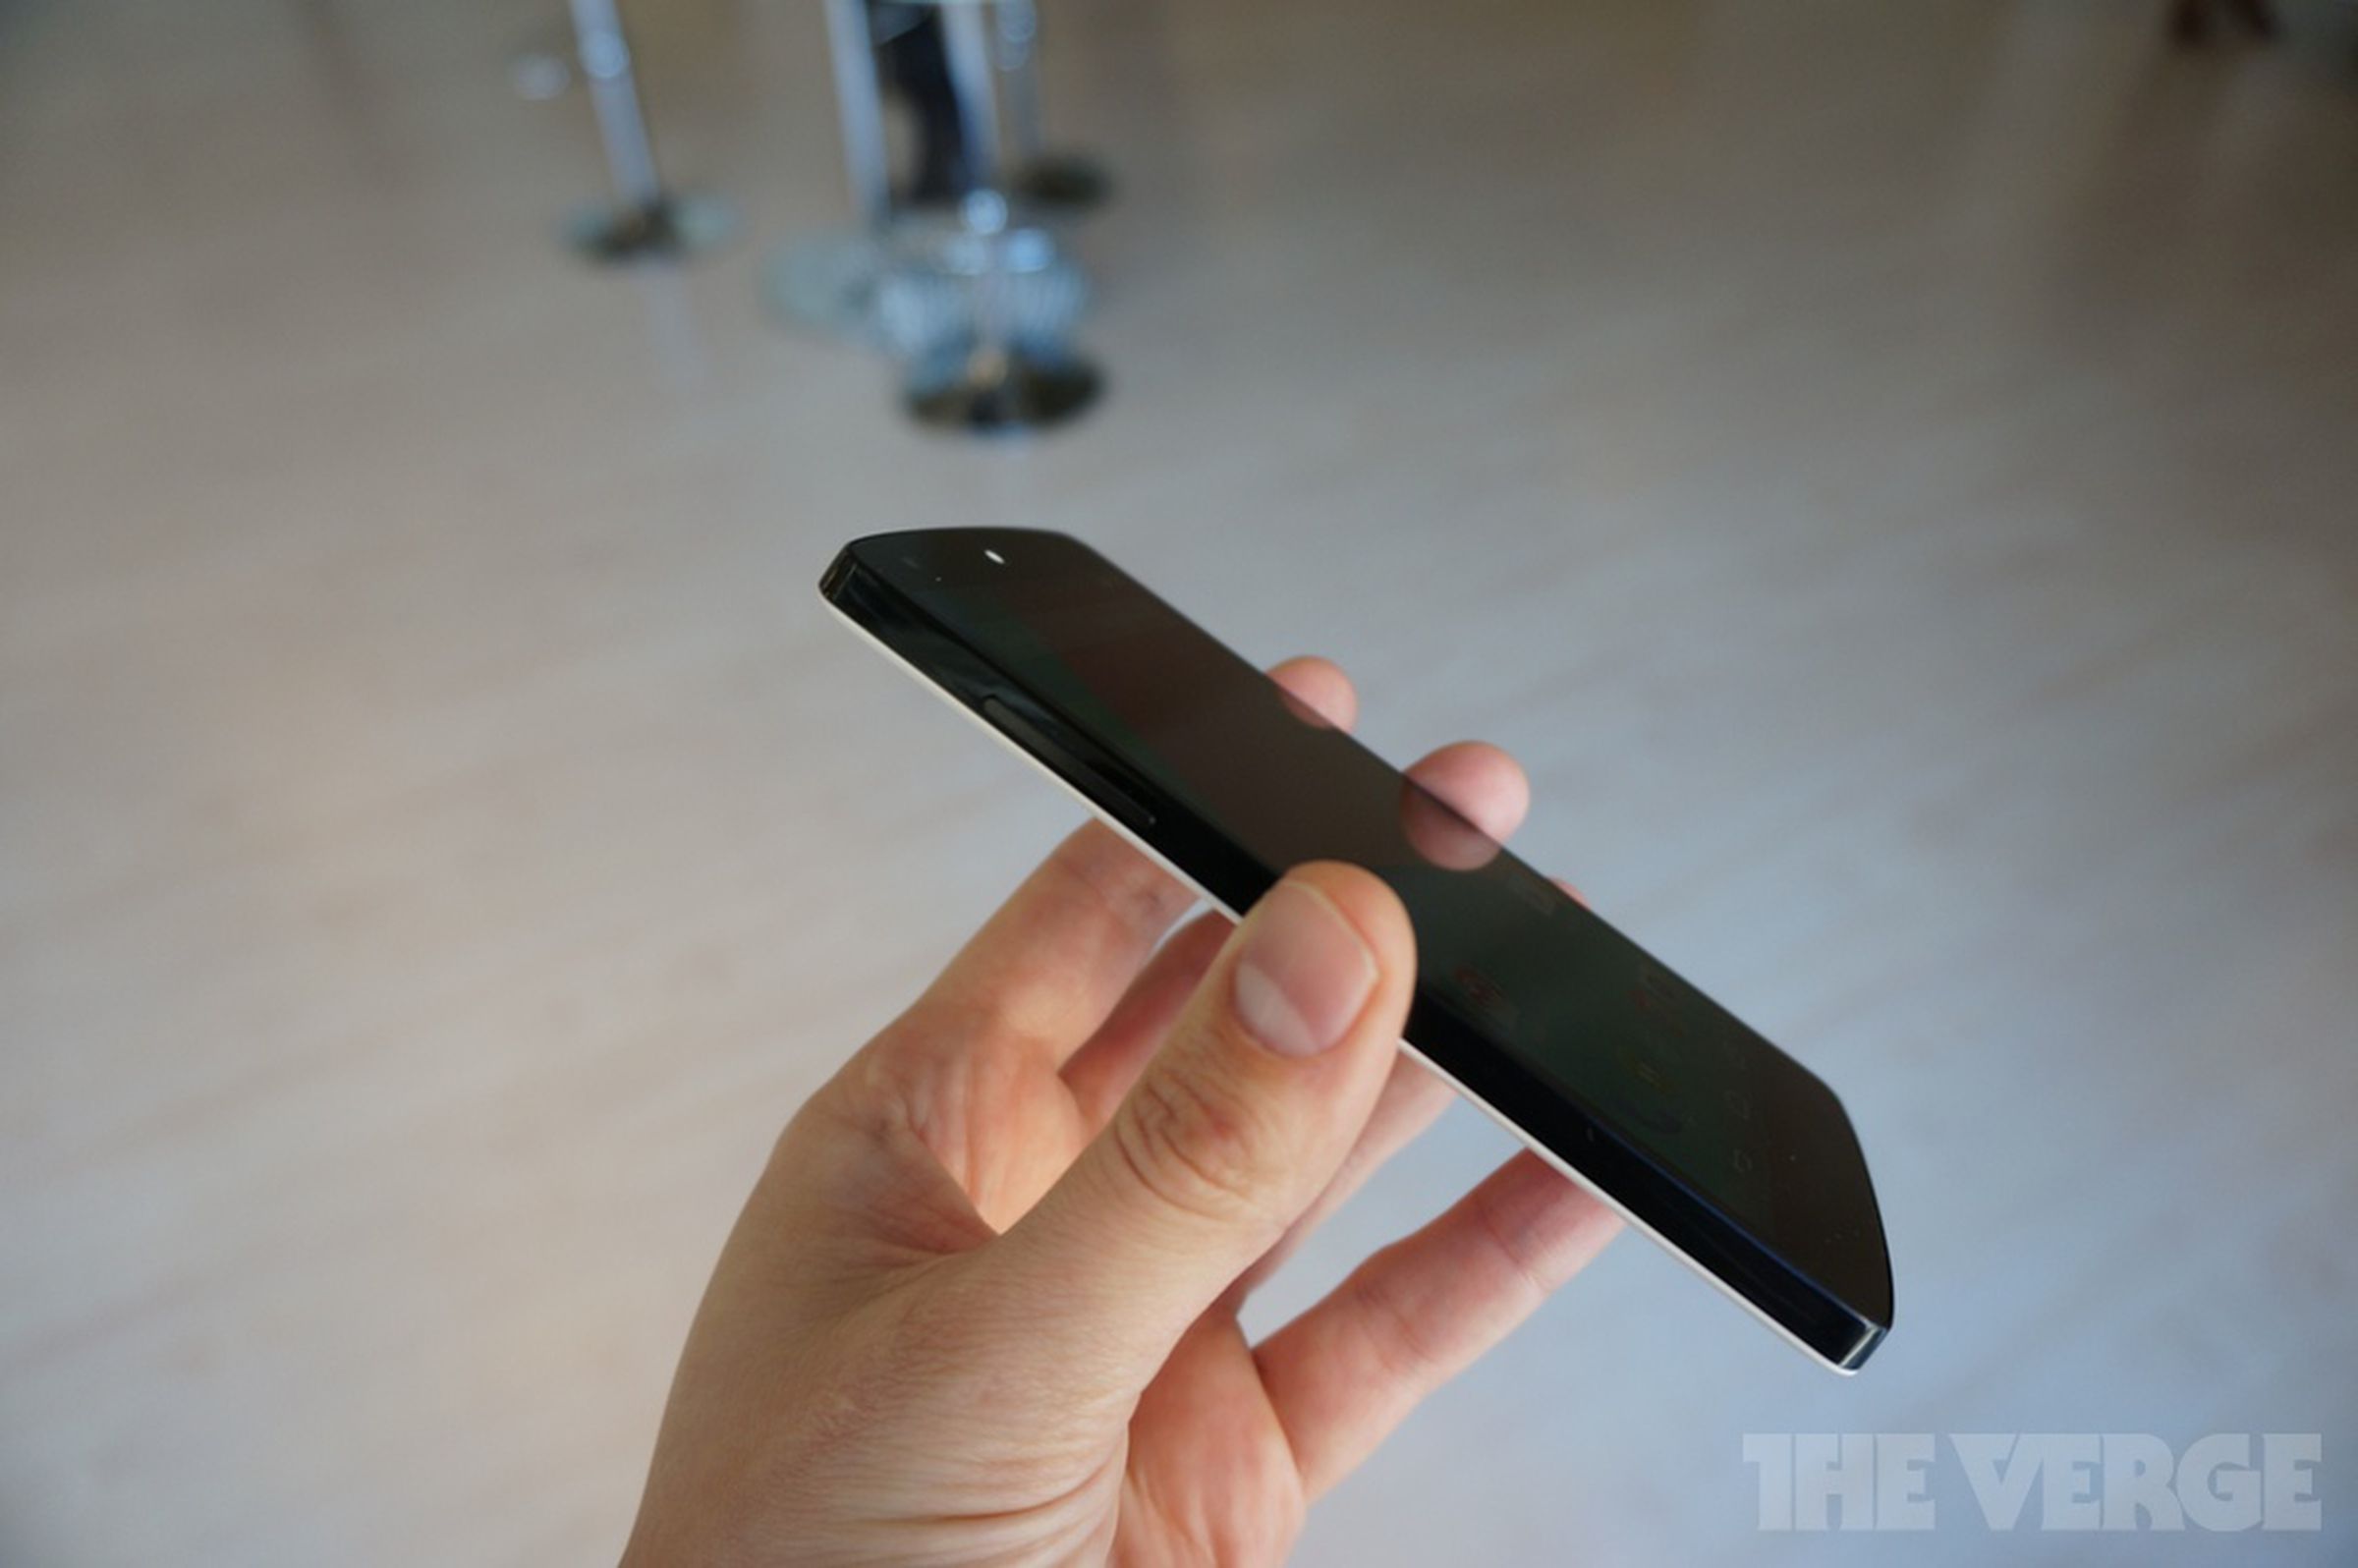 Nexus 5 hands-on photos